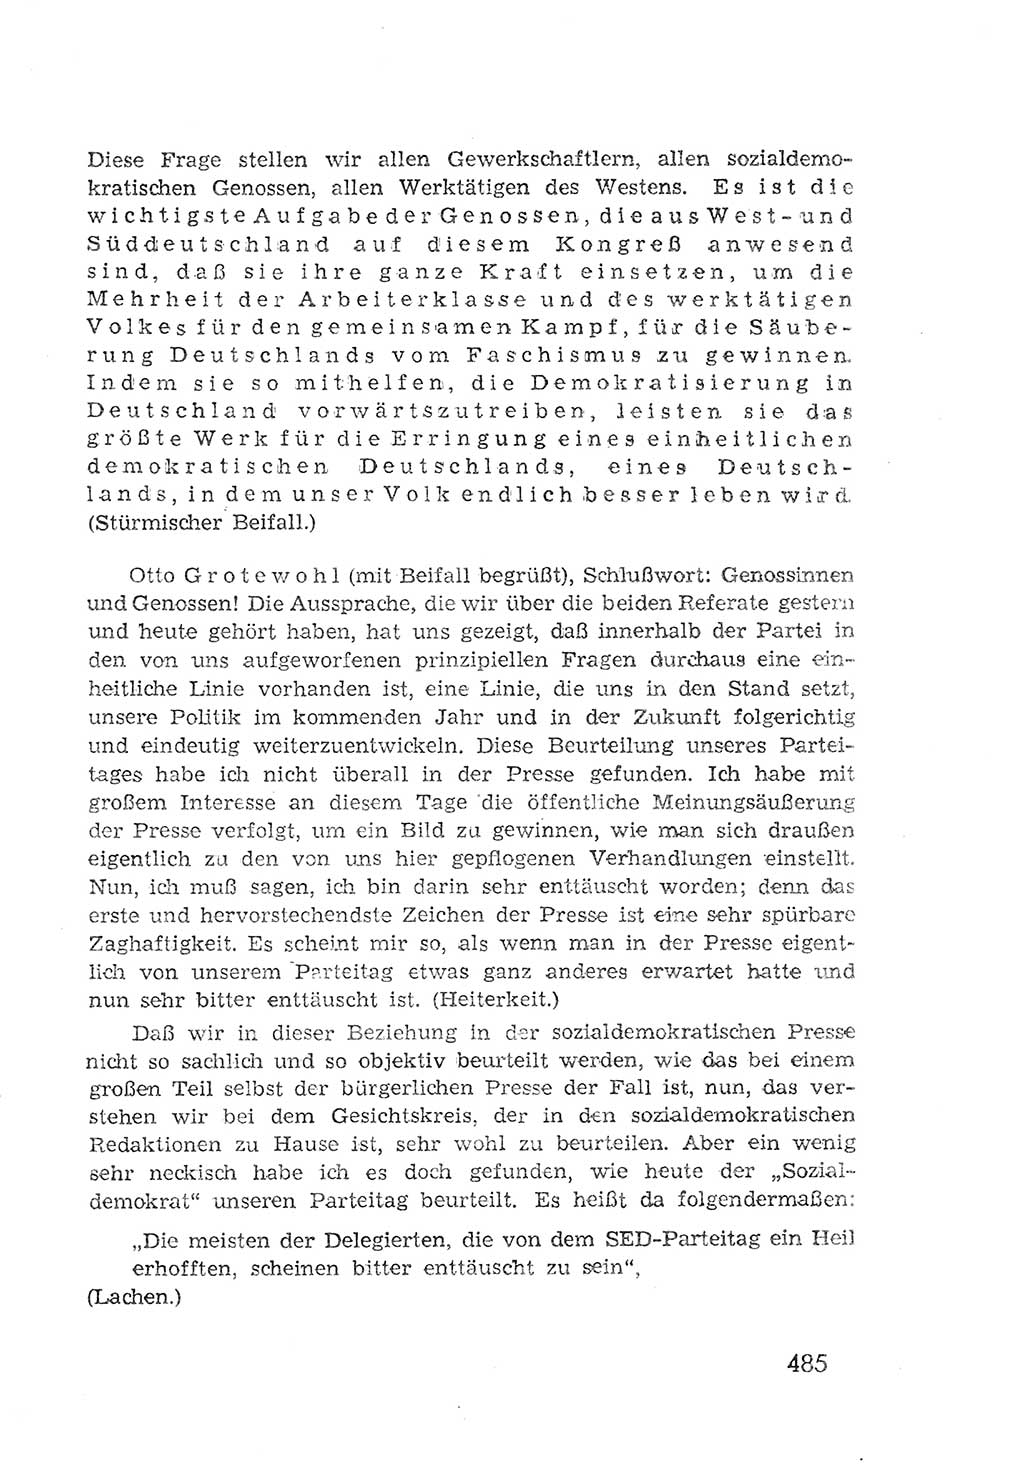 Protokoll der Verhandlungen des 2. Parteitages der Sozialistischen Einheitspartei Deutschlands (SED) [Sowjetische Besatzungszone (SBZ) Deutschlands] 1947, Seite 485 (Prot. Verh. 2. PT SED SBZ Dtl. 1947, S. 485)